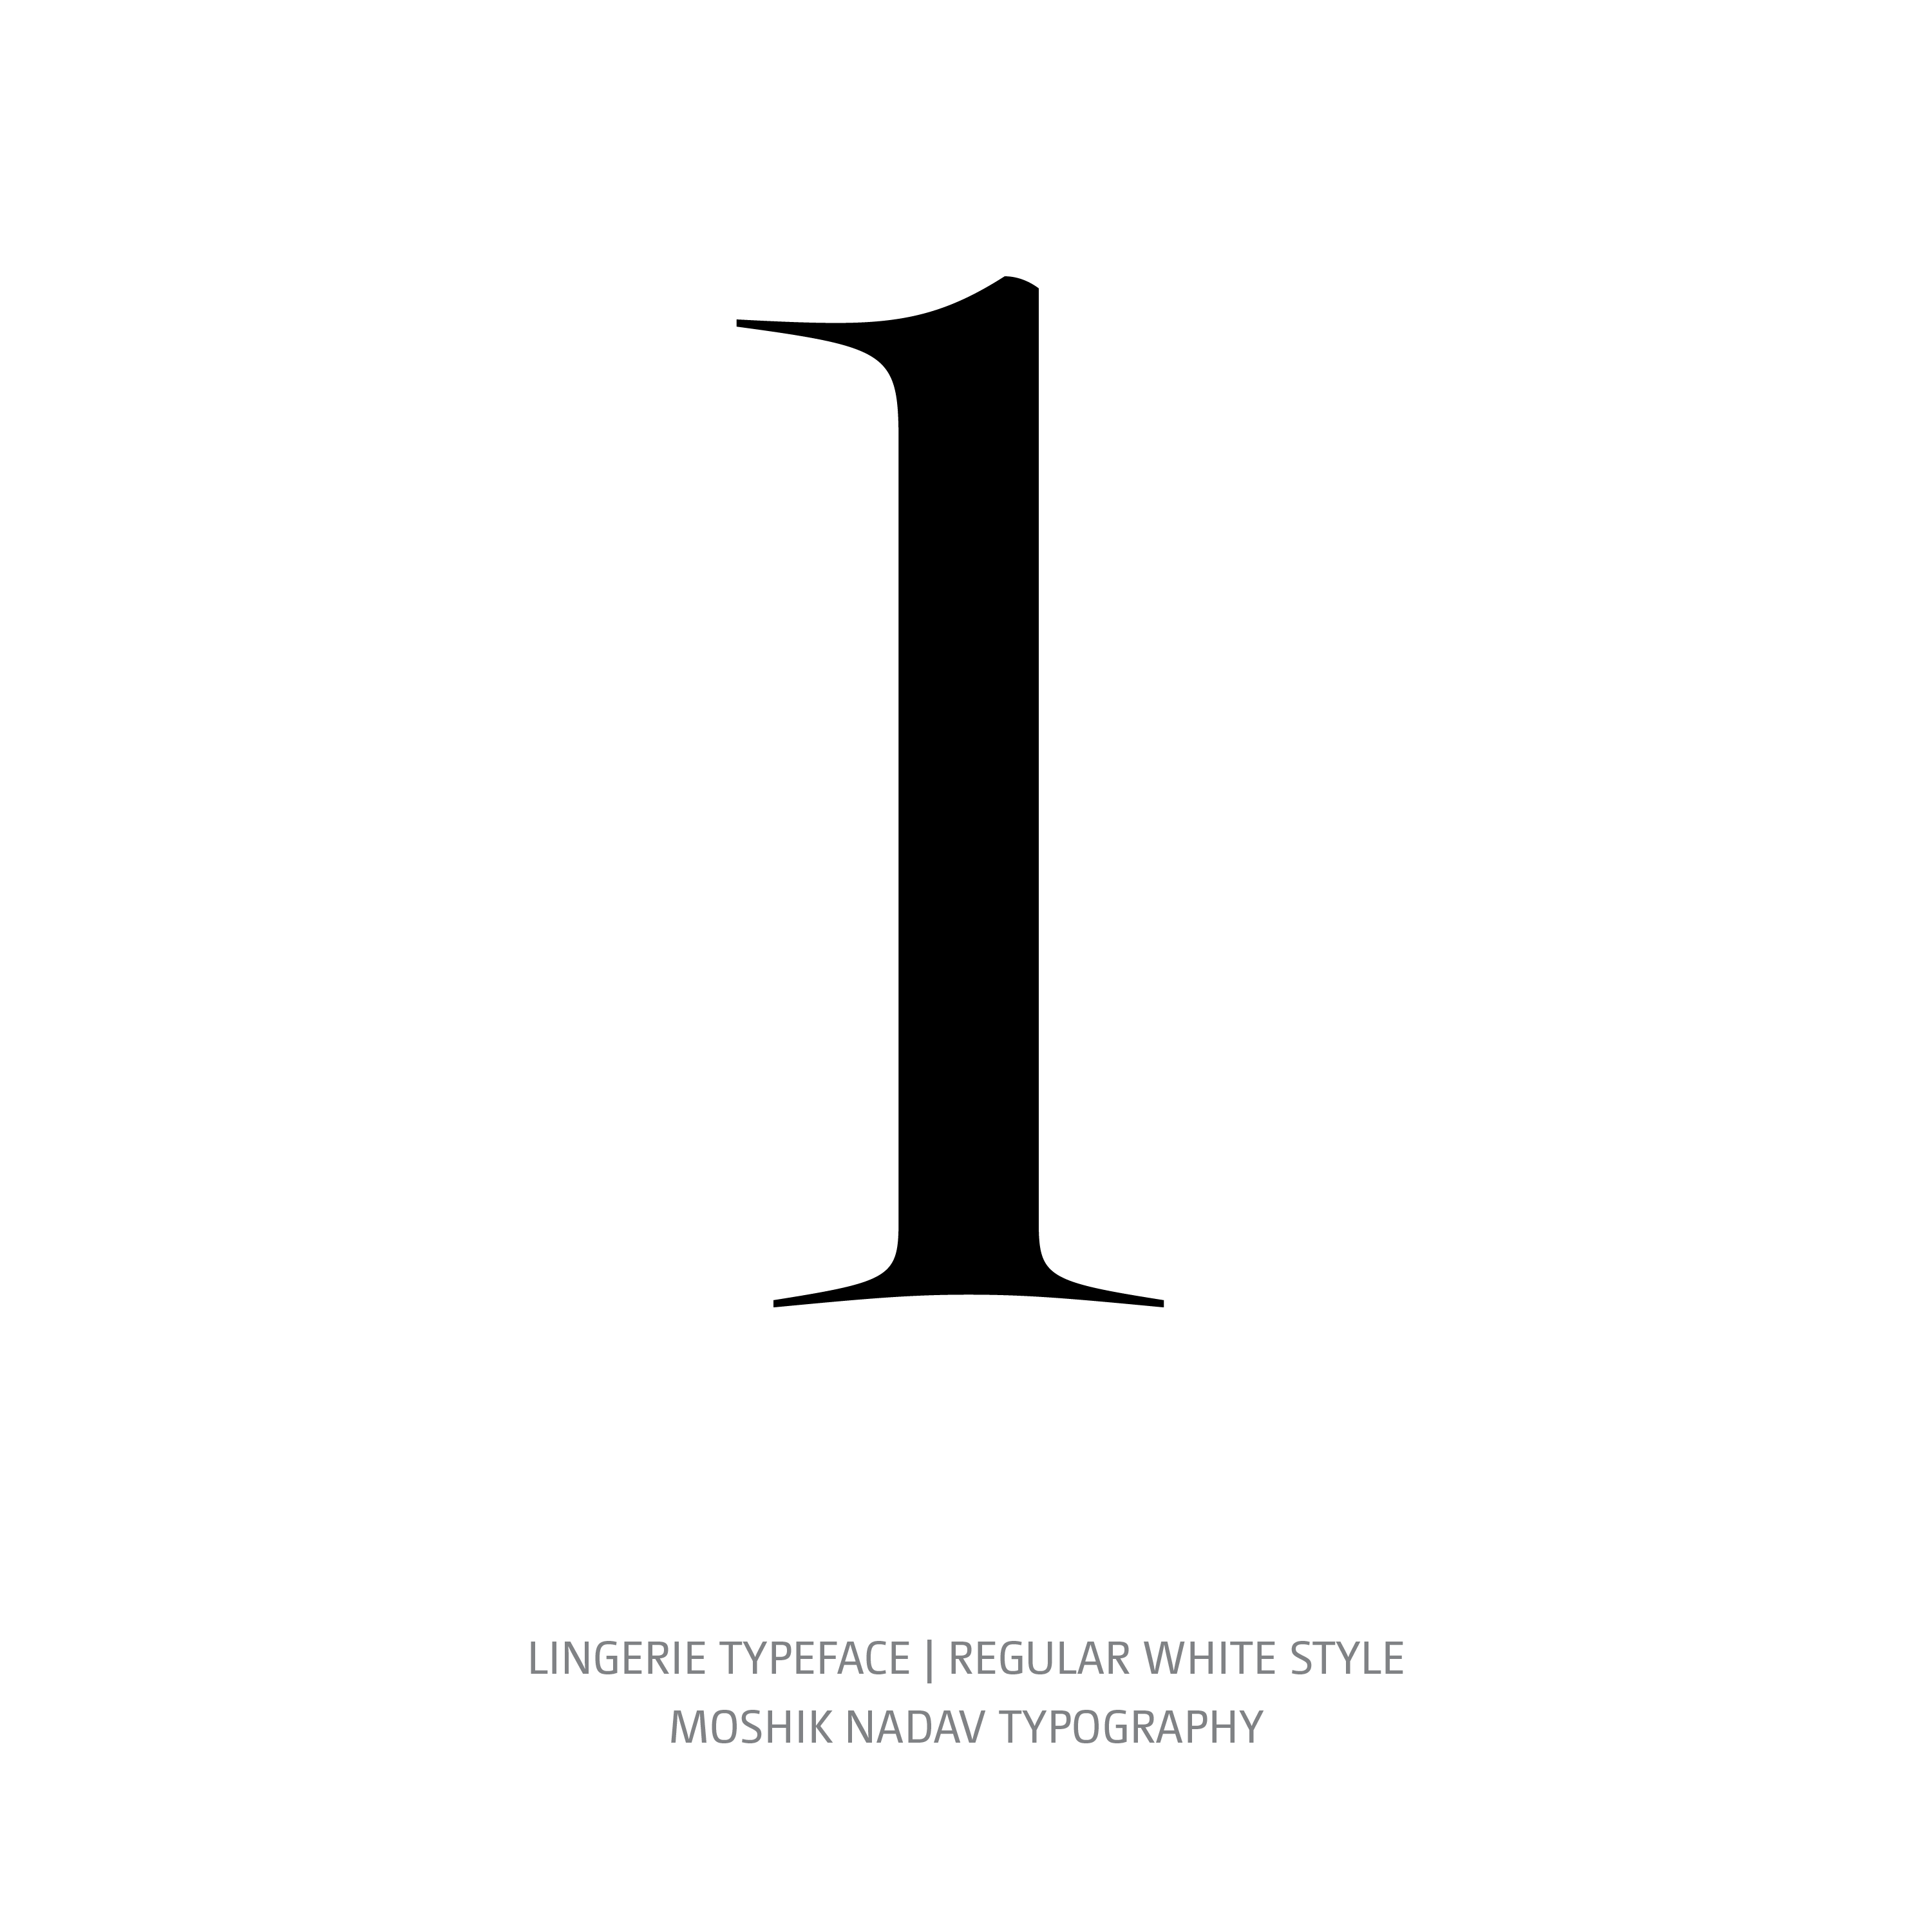 Lingerie Typeface Regular White l